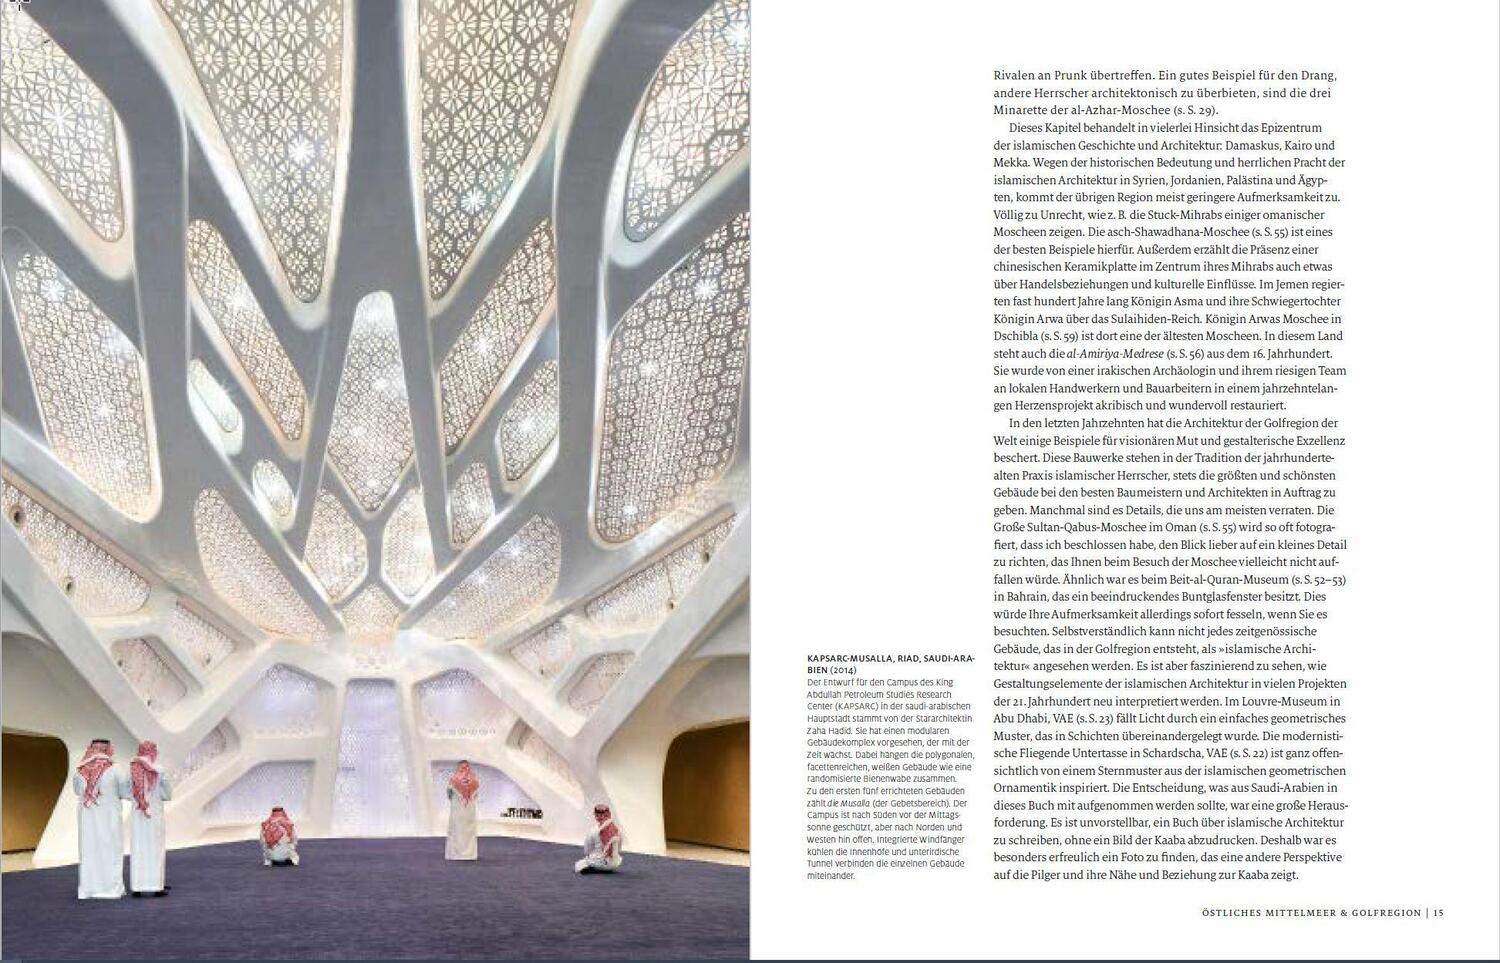 Bild: 9783791389684 | Architektur des Islam | Eric Broug | Buch | 336 S. | Deutsch | 2023